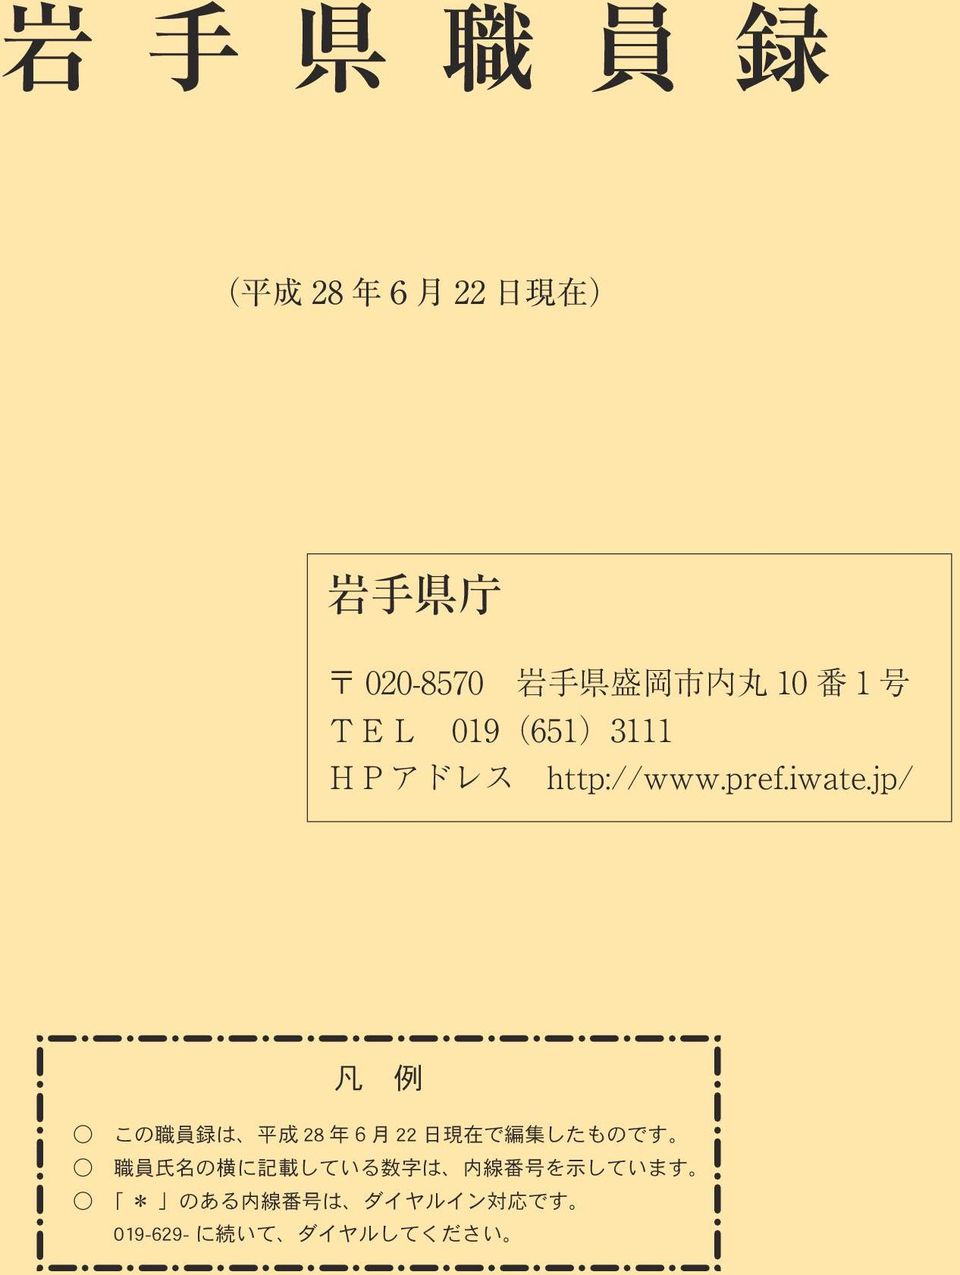 jp/ 凡 例 この 職 員 録 は 平 成 28 年 6 月 22 日 現 在 で 編 集 したものです 職 員 氏 名 の 横 に 記